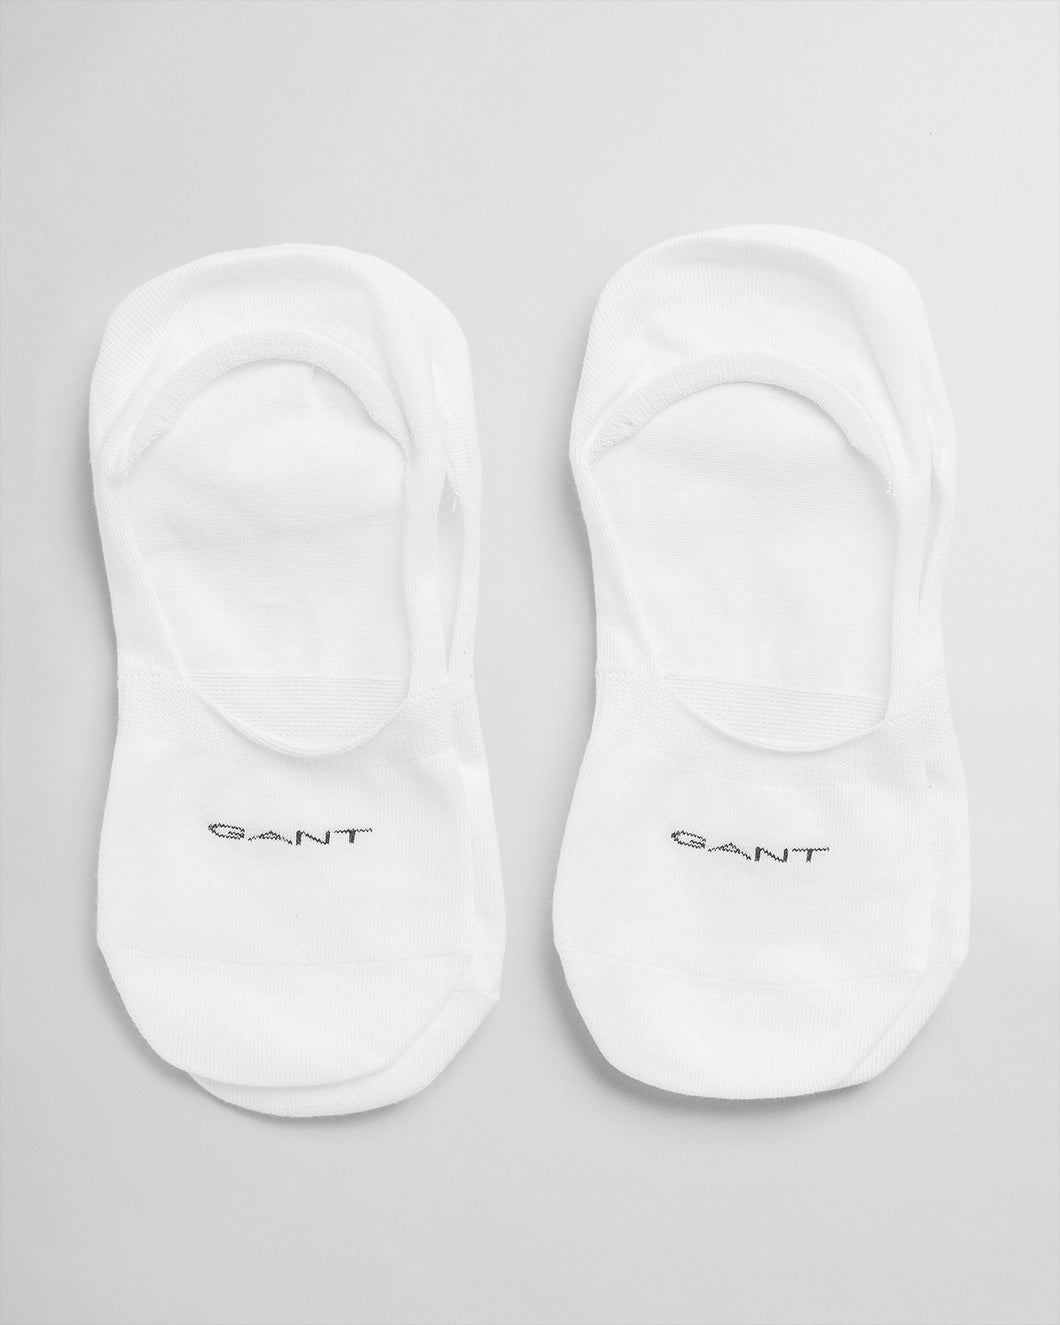 GANT - Invisbile Socks, 2-Pack, White